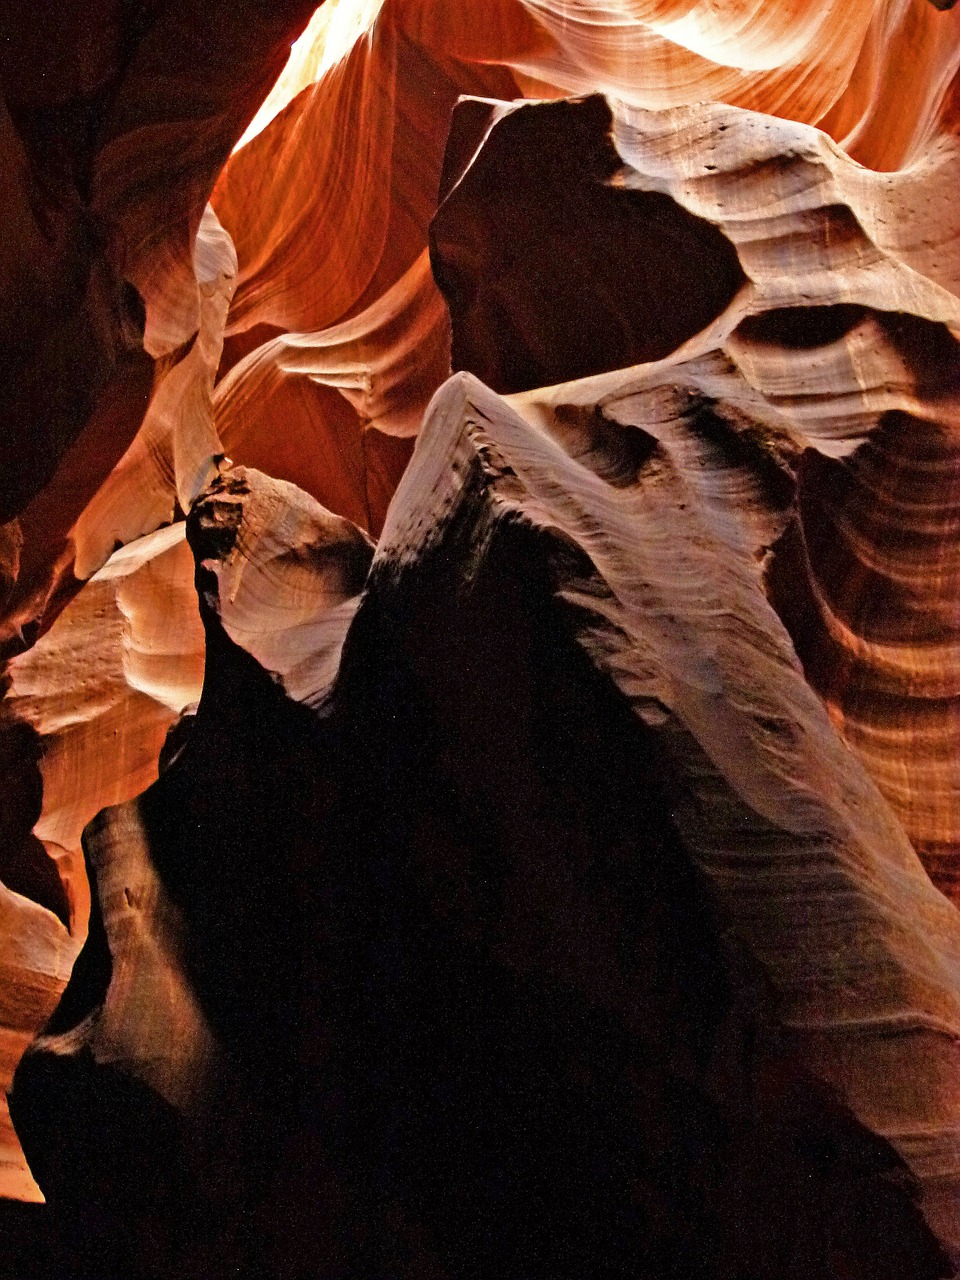 Viršutinė Antilopės Lizdo Kanjonas, Puslapis, Arizona, Usa, Dykuma, Smiltainis, Erozija, Turistų Atrakcijos, Gamta, Formavimas